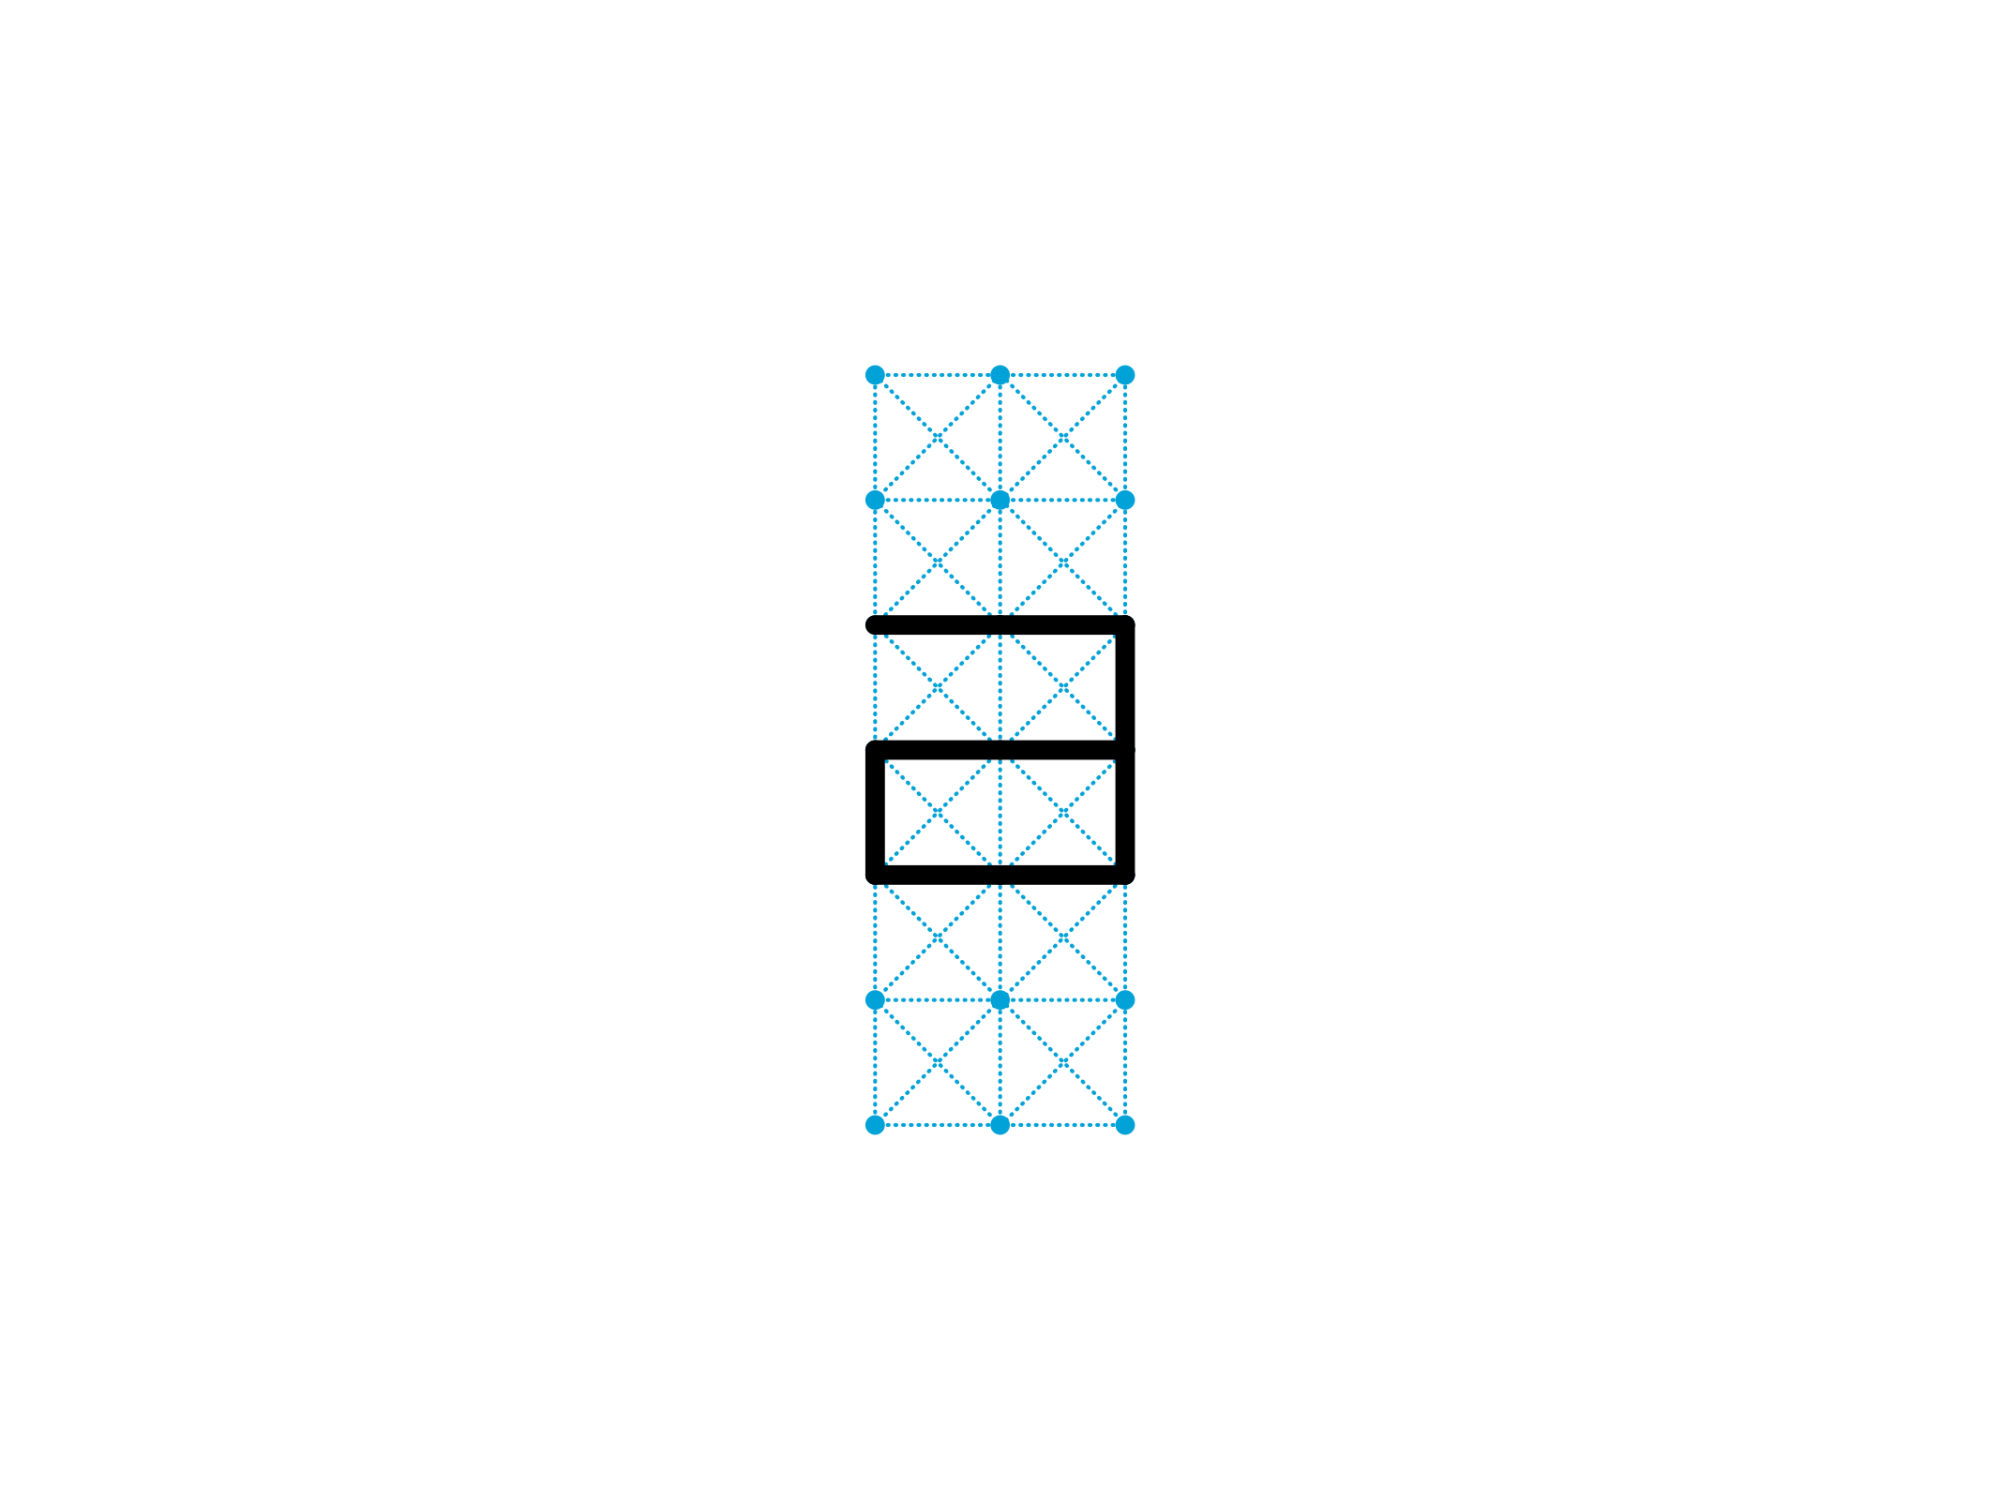 La grille de « quantas » (segments) employée par Hofstadter et son équipe pour dessiner les gridfonts.